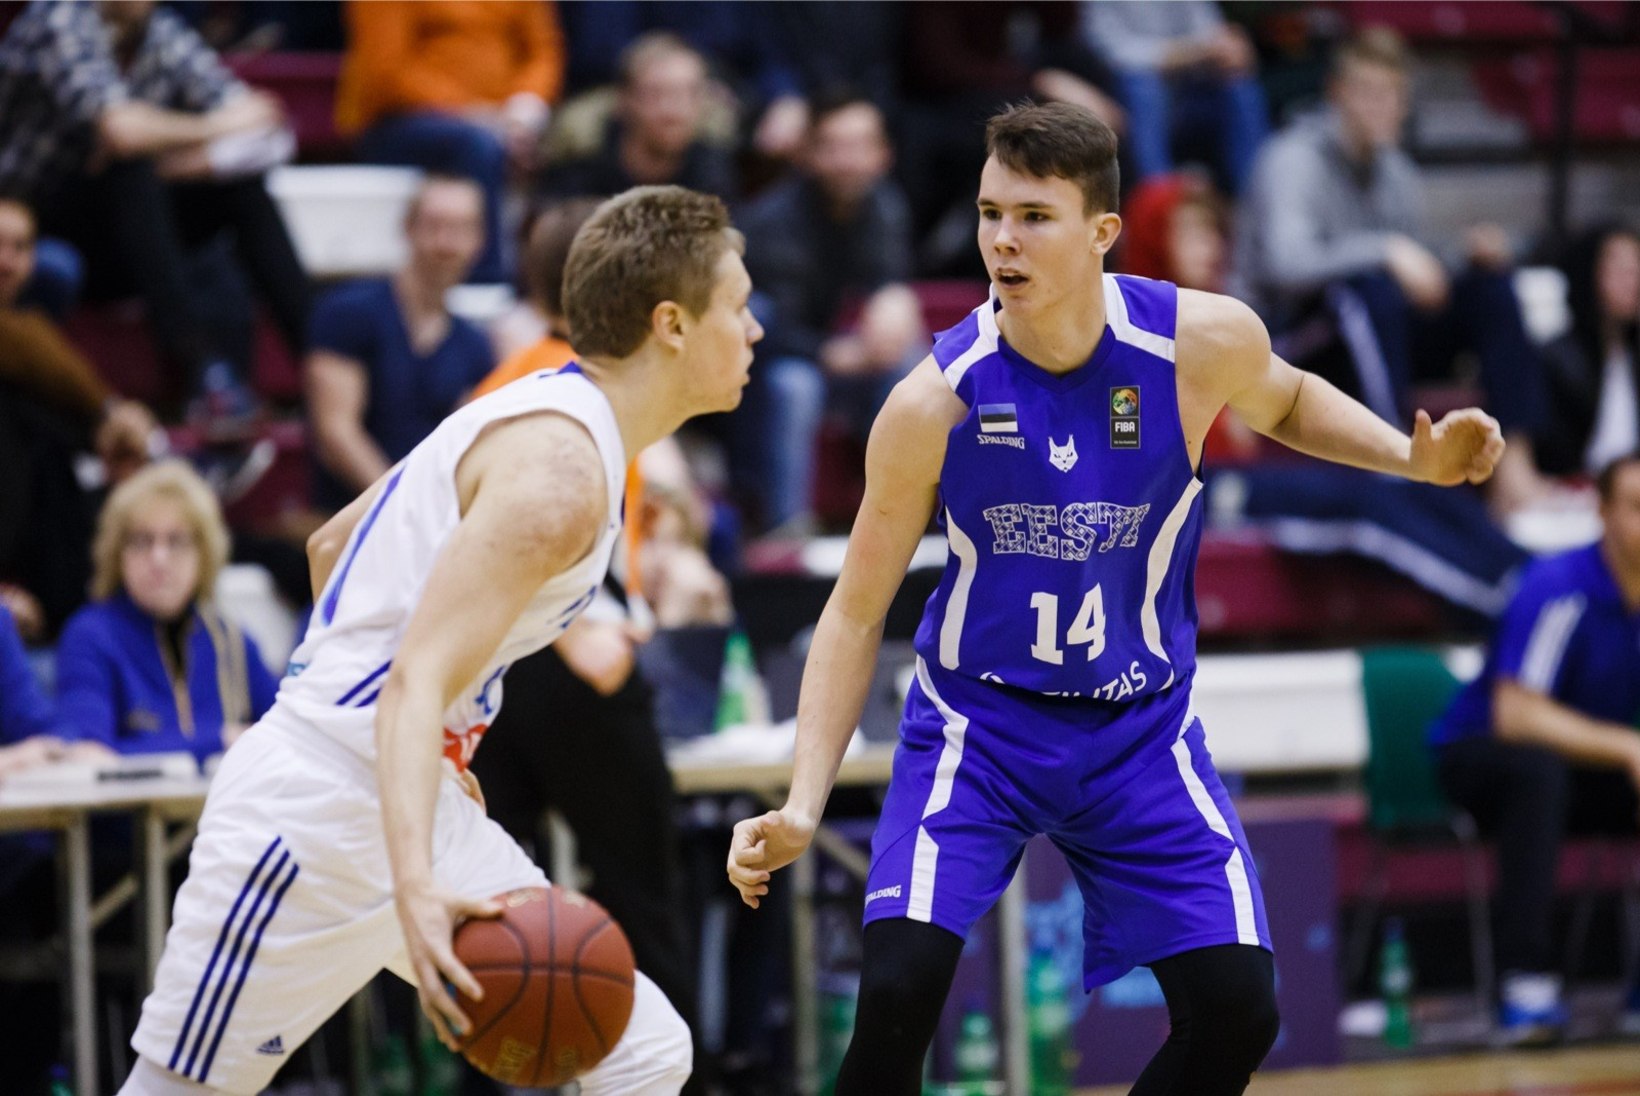 UUES BASKETBALLIS | Korvpalli noortekoondislane Kaspar Lootus karmis olelusvõitluses Leedus